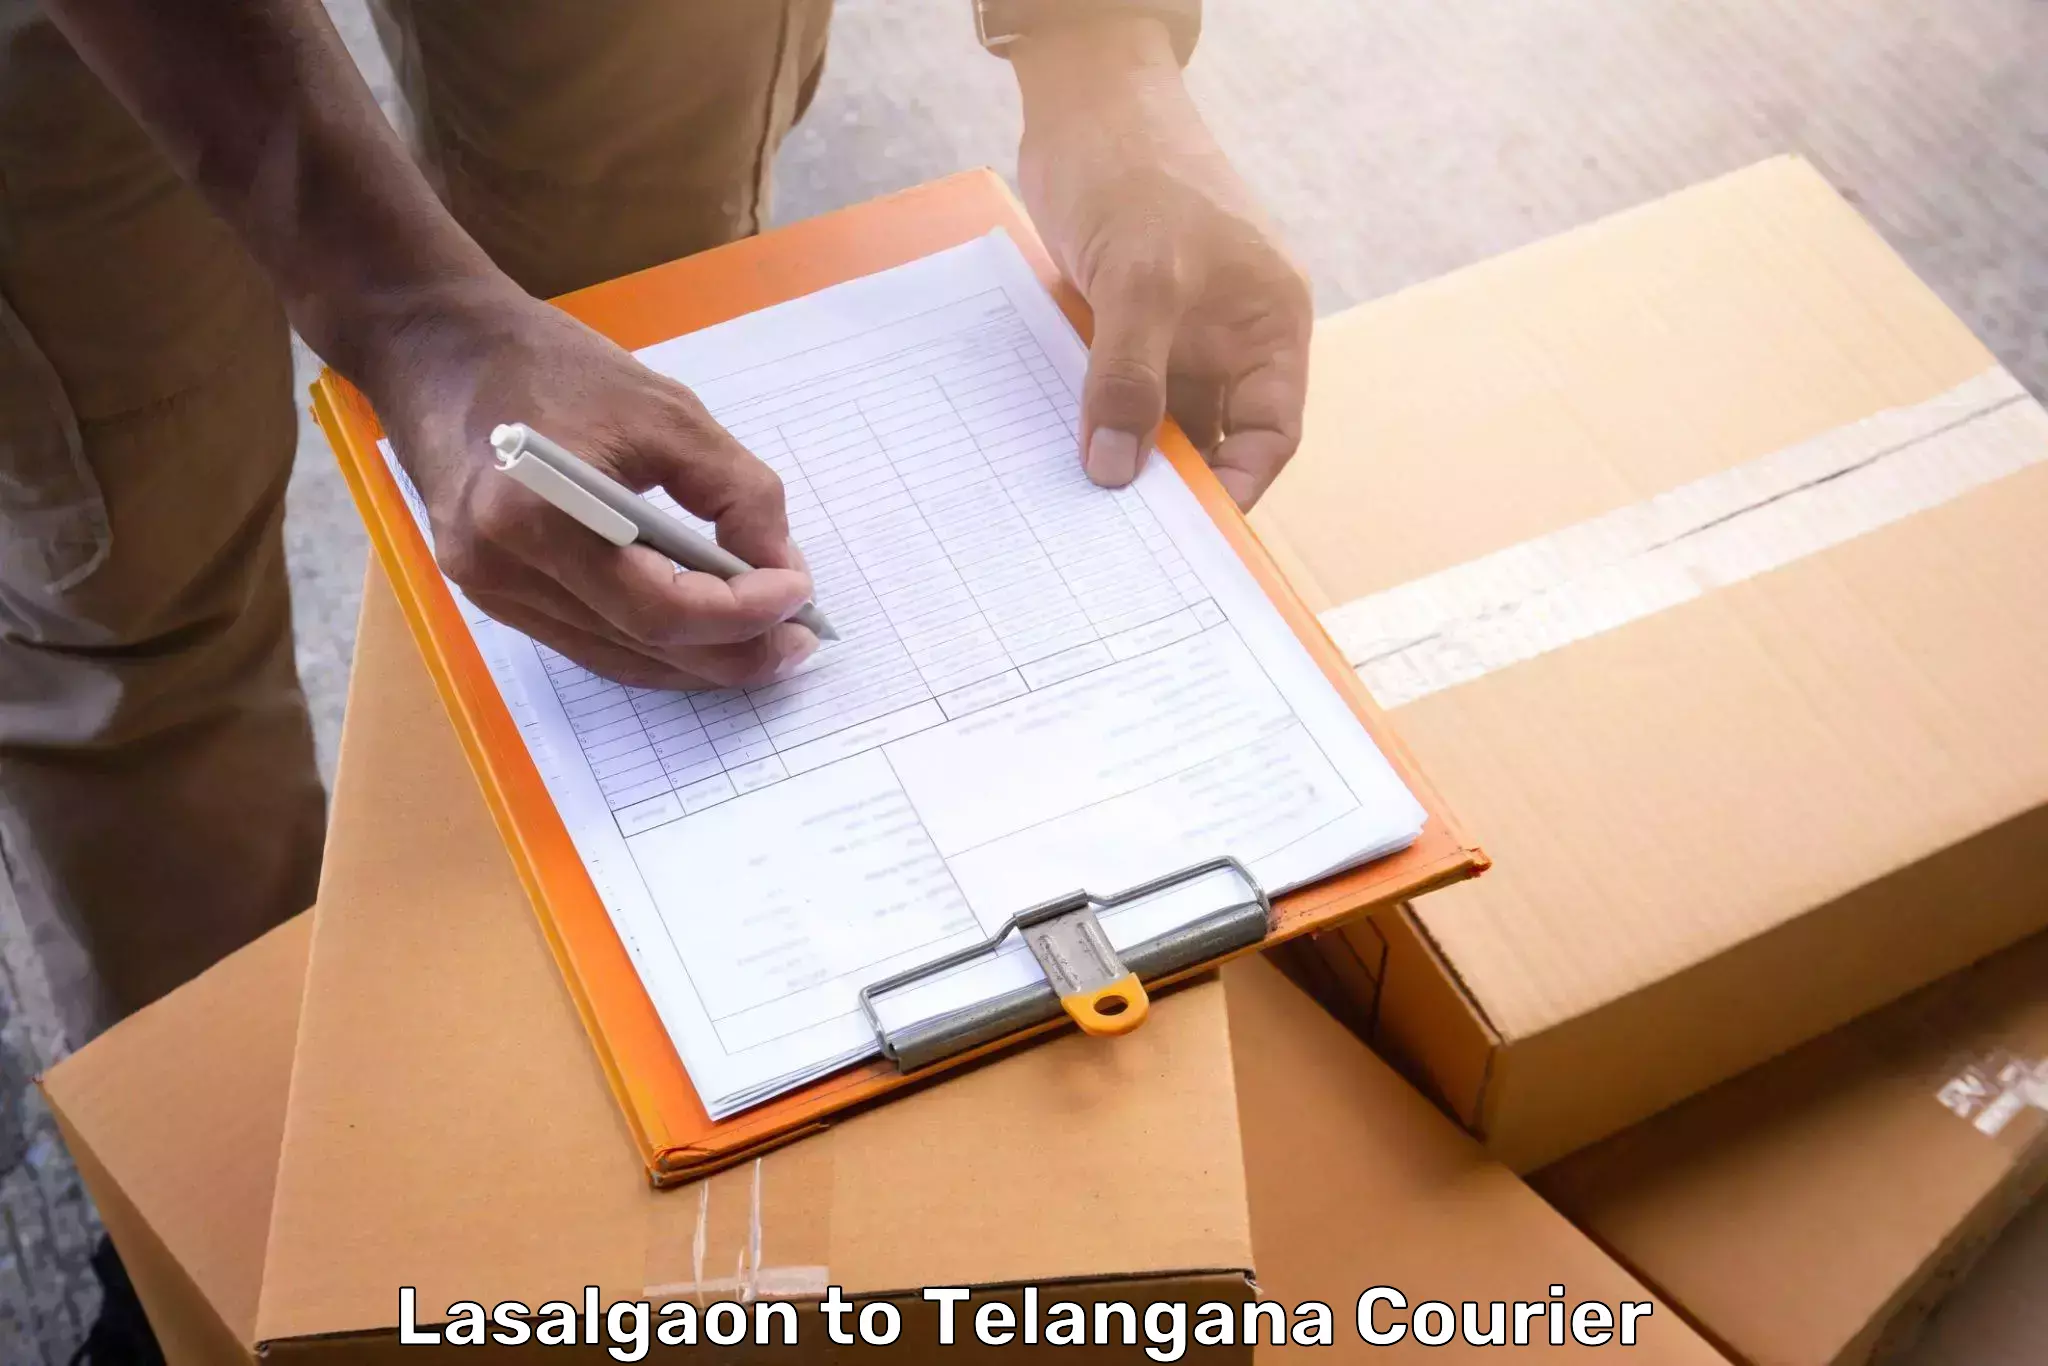 Luggage shipment specialists Lasalgaon to Telangana